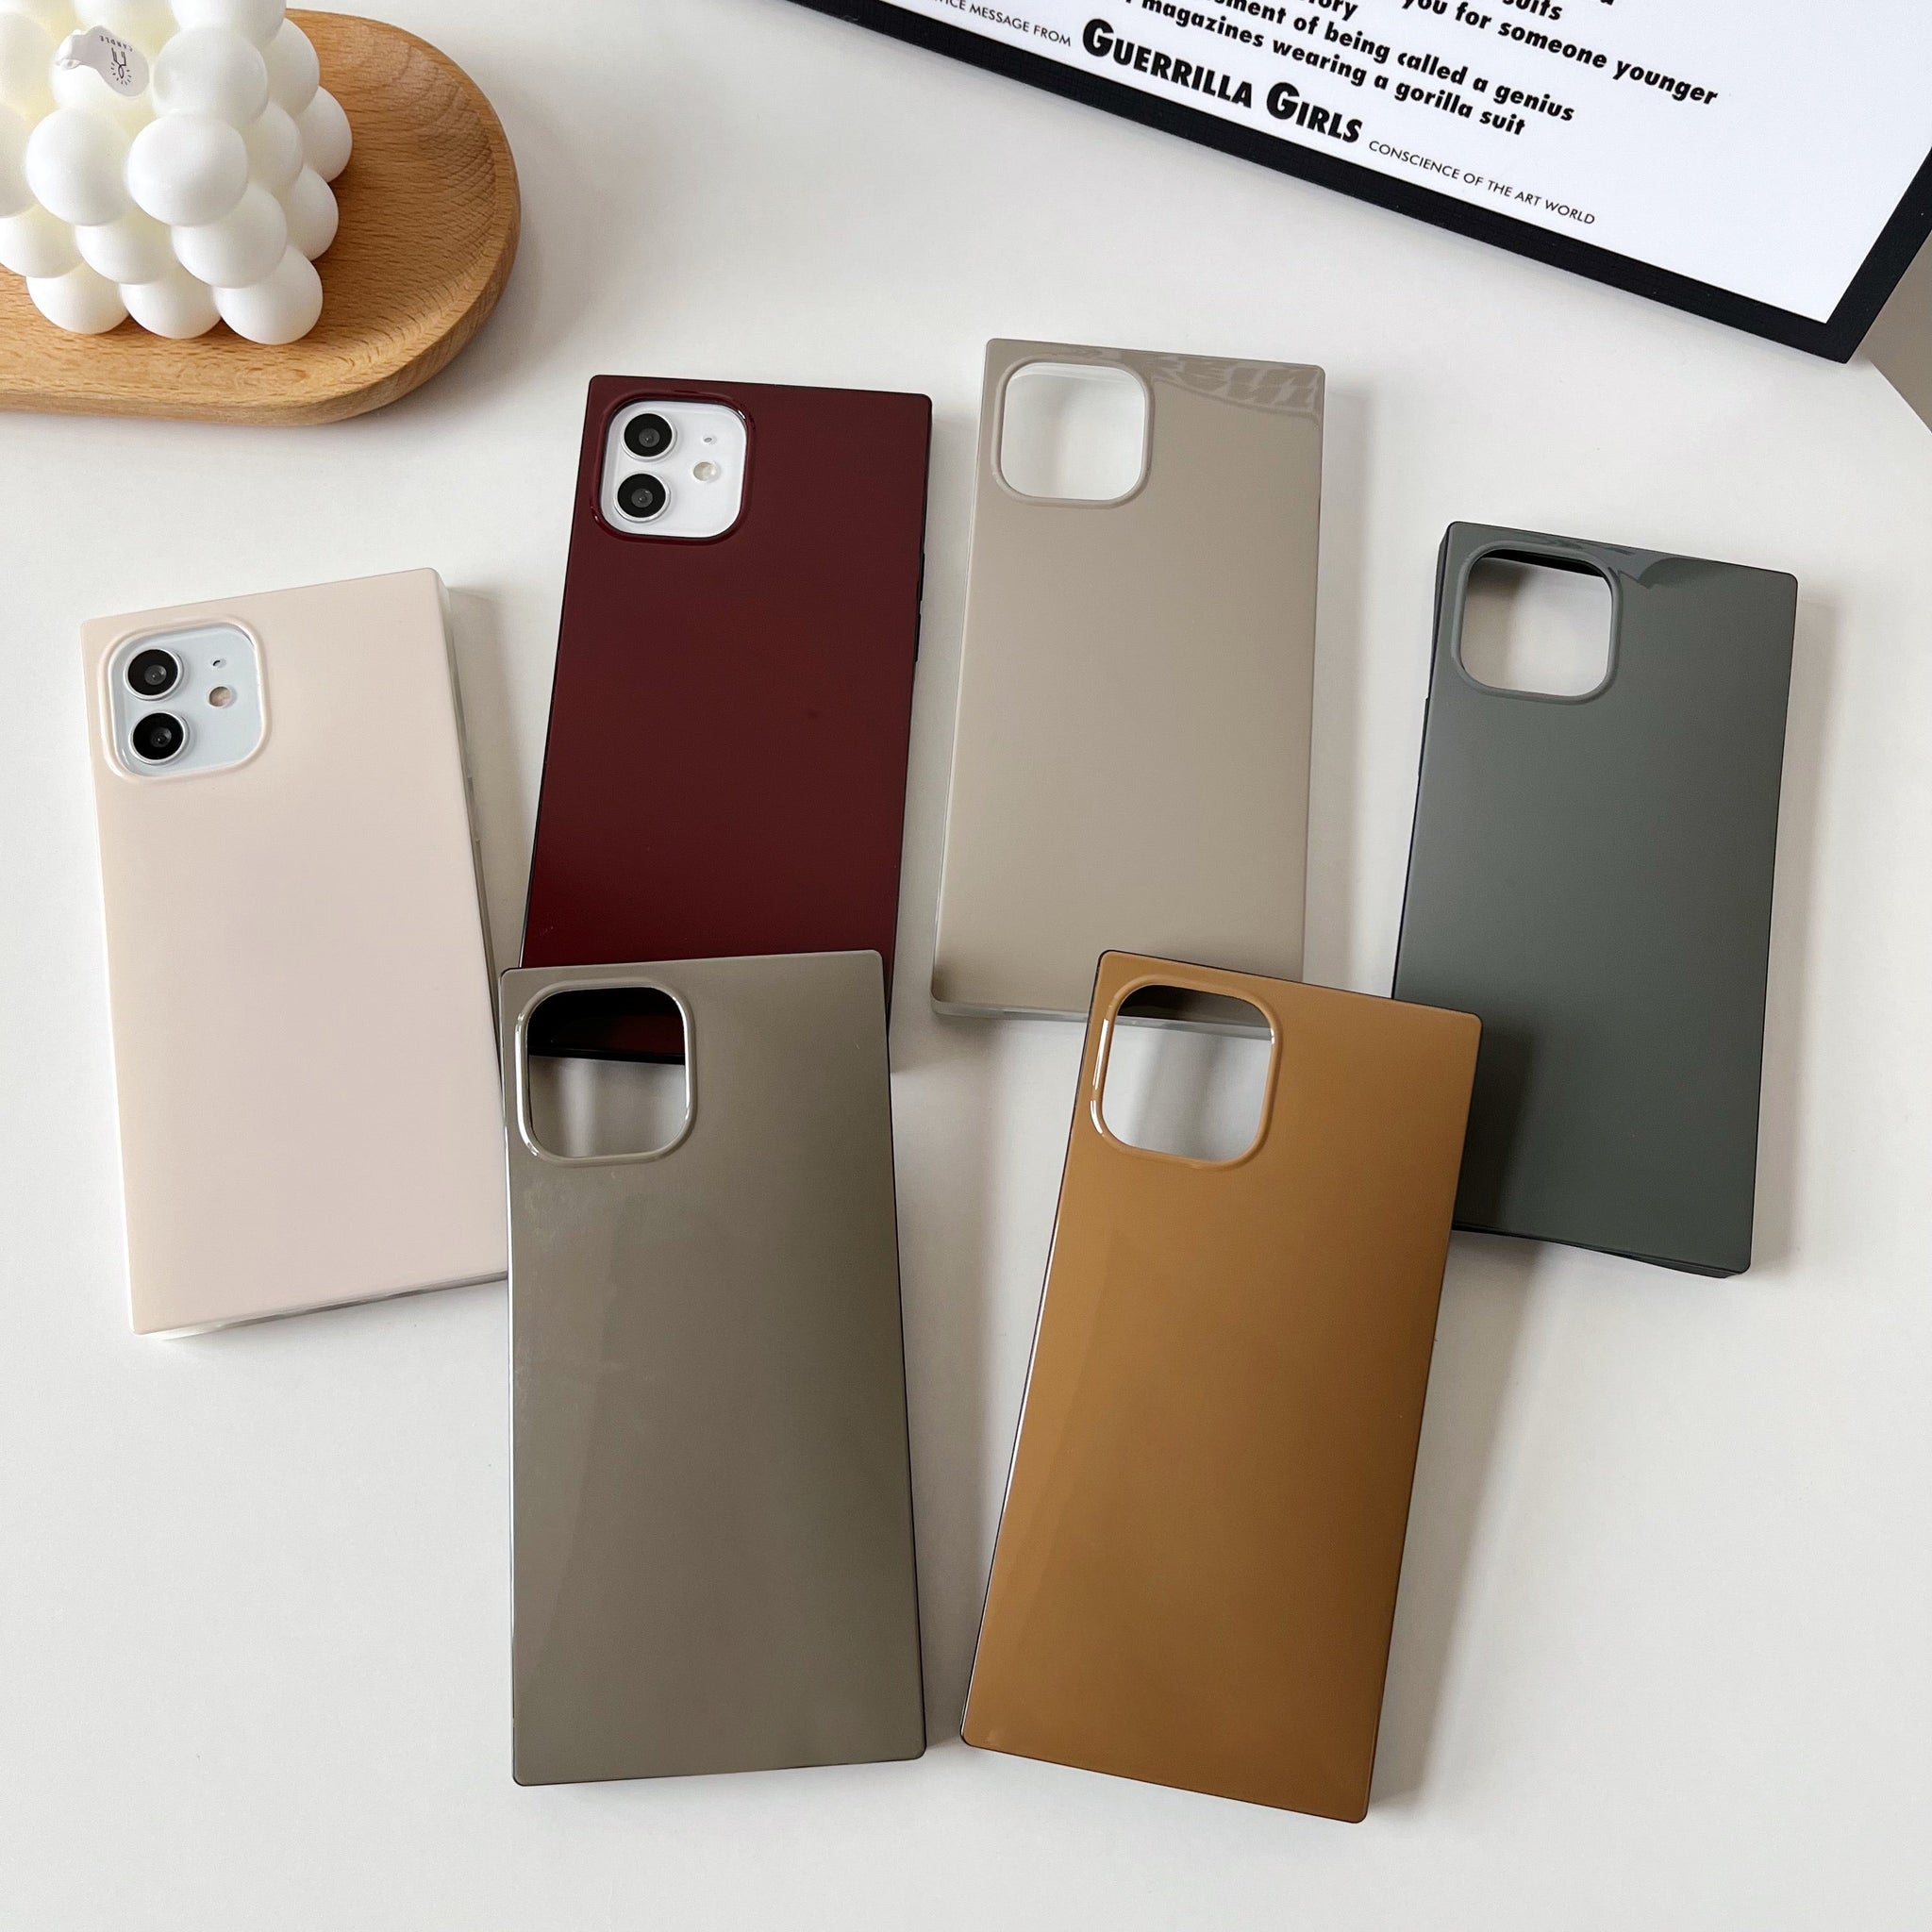 iPhone 11 Pro Max Case Square Neutral Plain Color (Golden Brown)